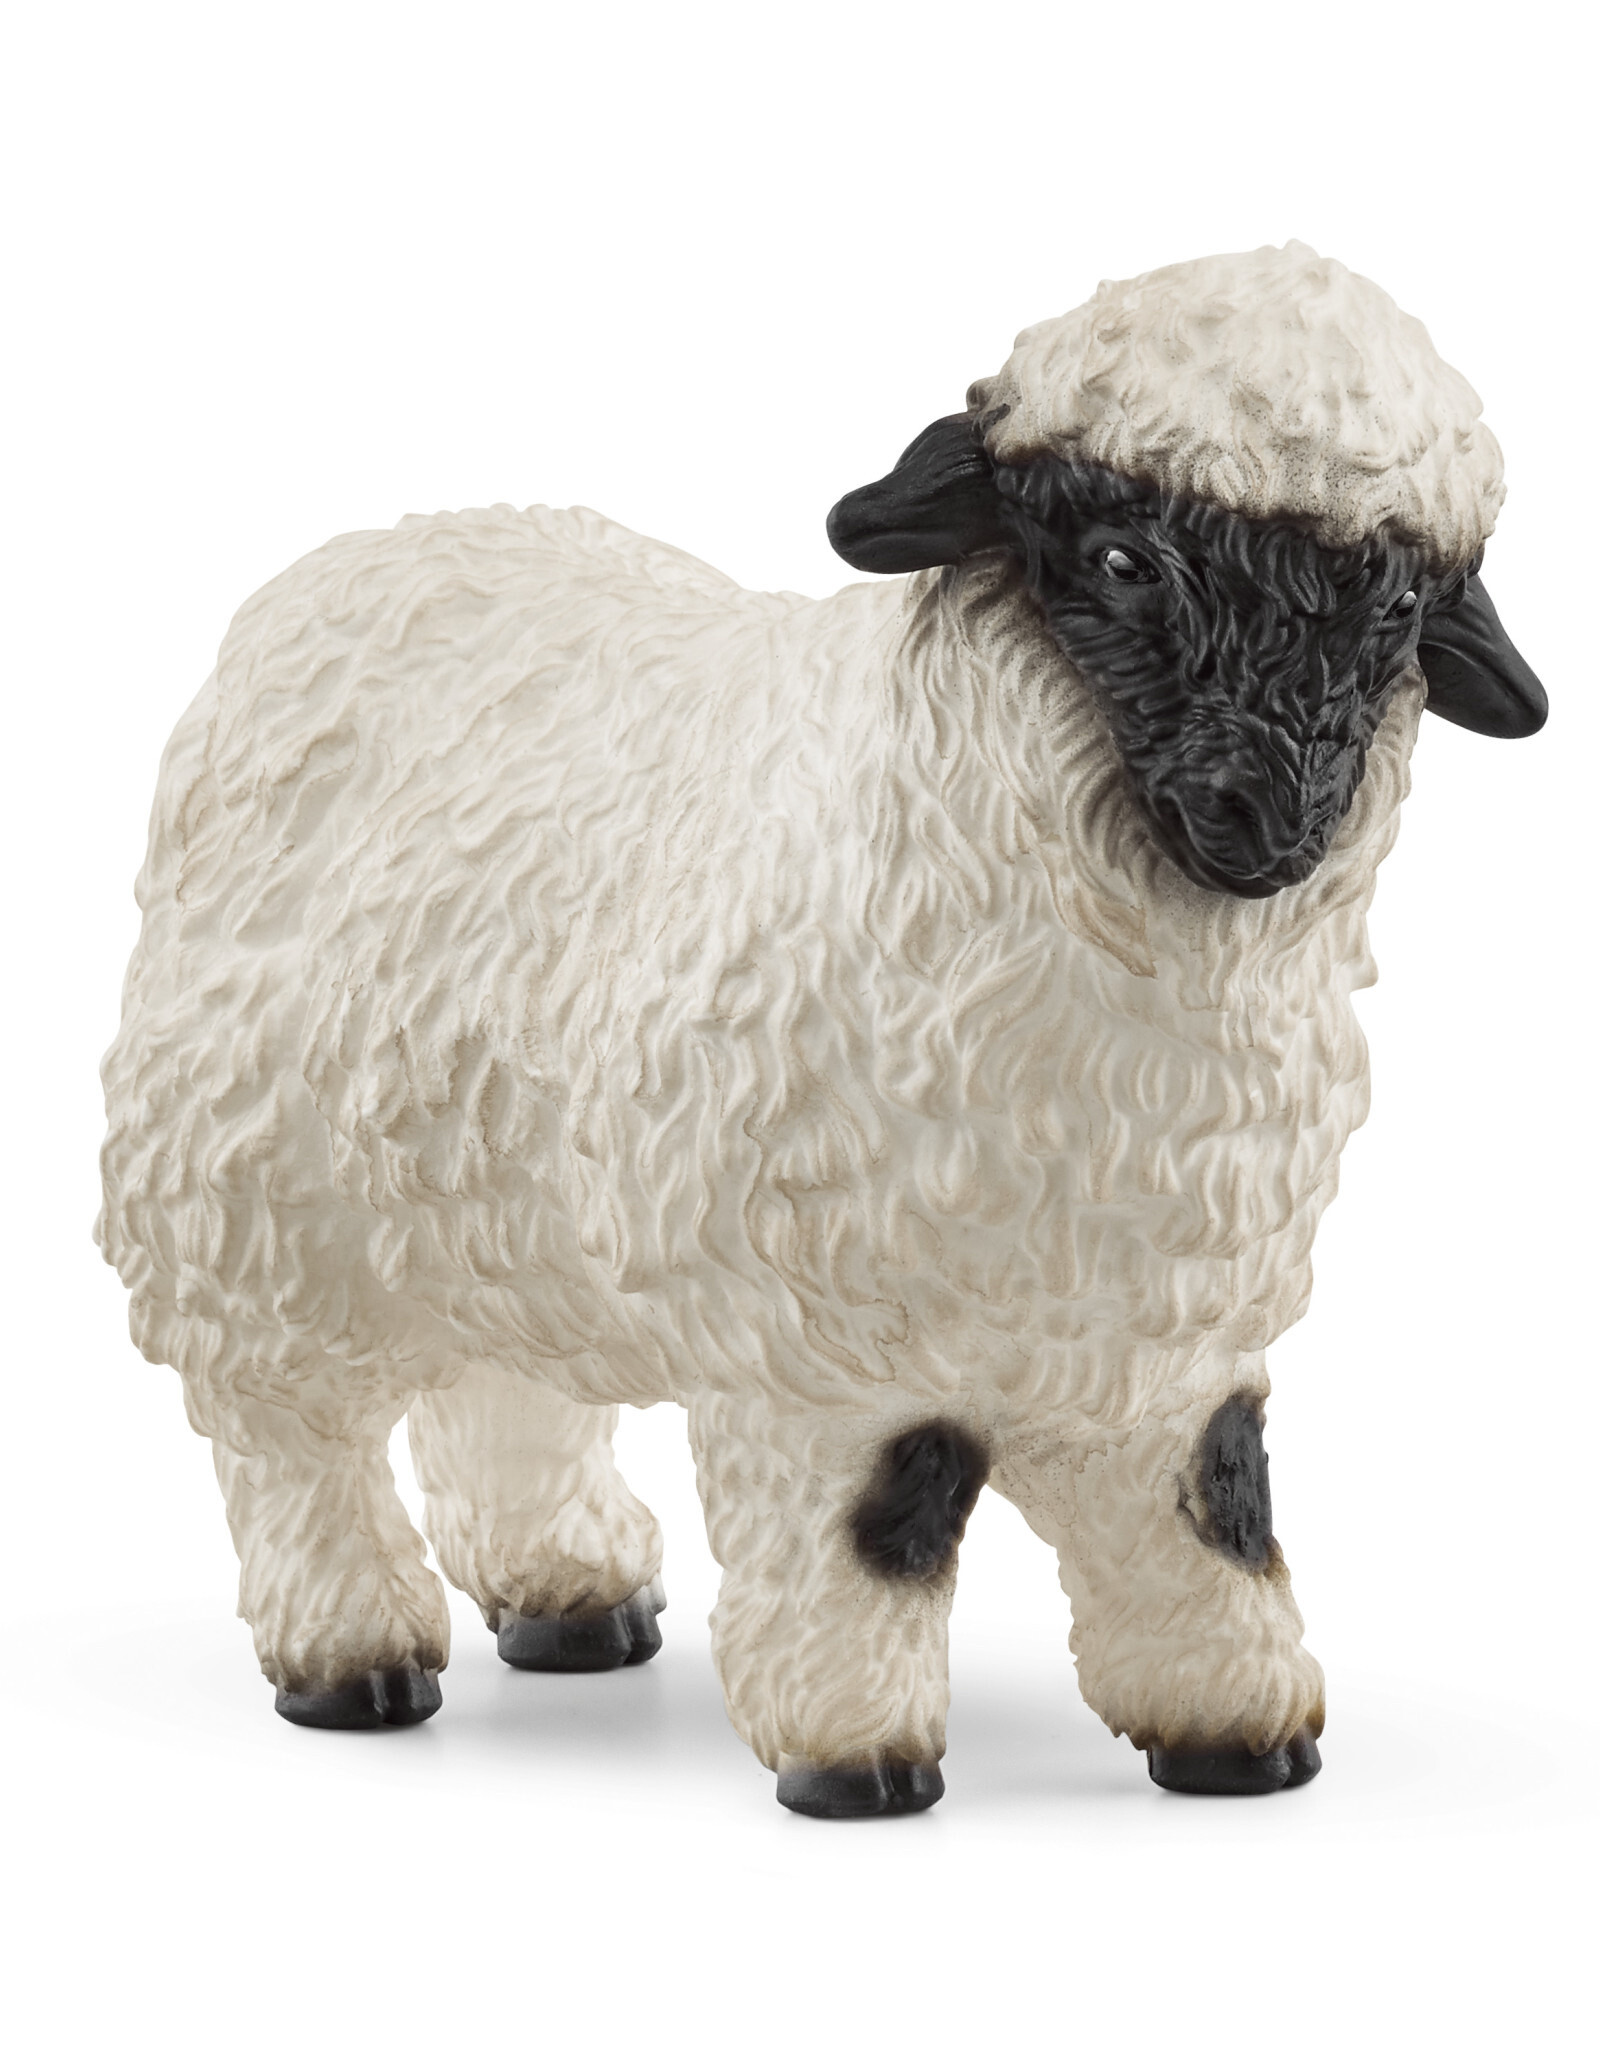 SCHLEICH Valais Black-nosed Sheep